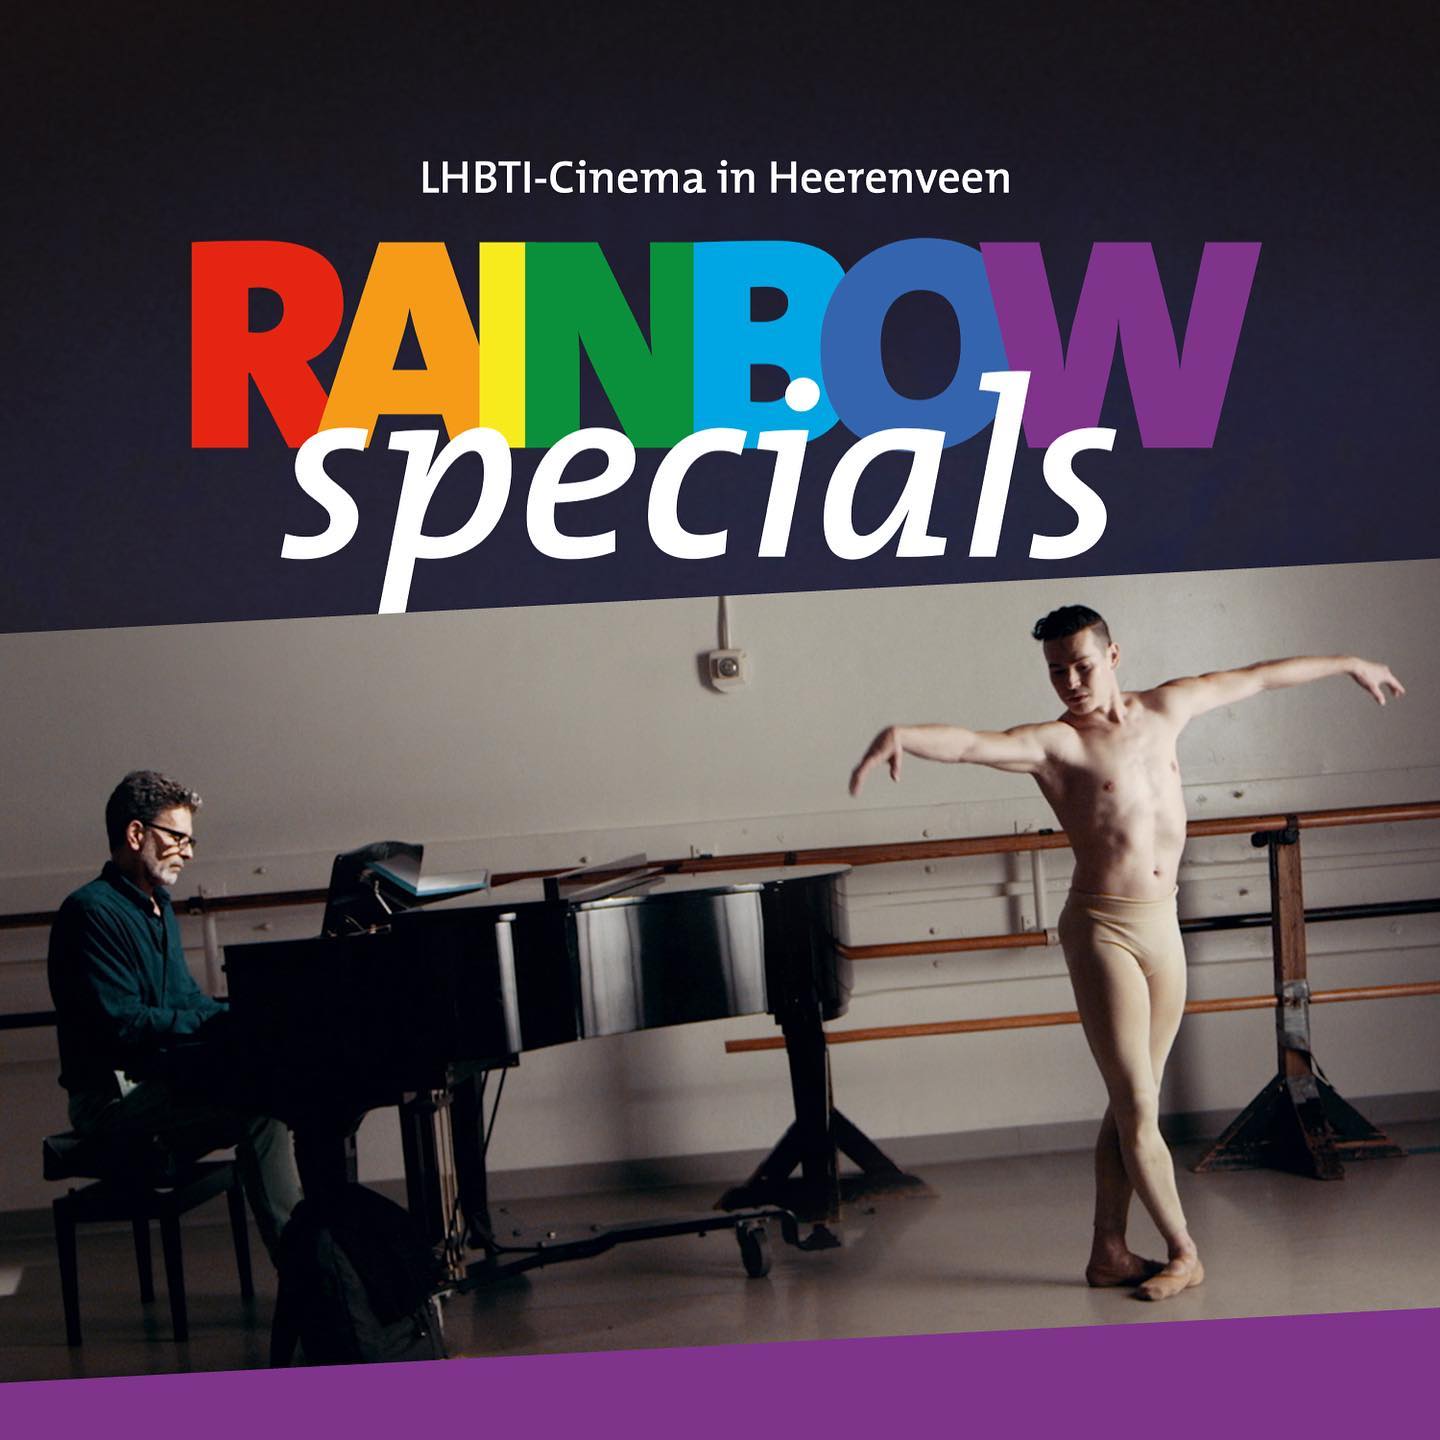 Aanstaande woensdag is de laatste Rainbow Specials film voor de zomerstop. Deze keer kun je kijken naar de film ‘The Accompanist’. Een romantische film over de heilzame werking van muziek en dans.

Woensdag 6 juli om 19.30 uur te zien bij @de.biosheerenveen.

#rbh #film #filmhuis #lhbti #cinema #bios #heerenveen #rainbowspecials